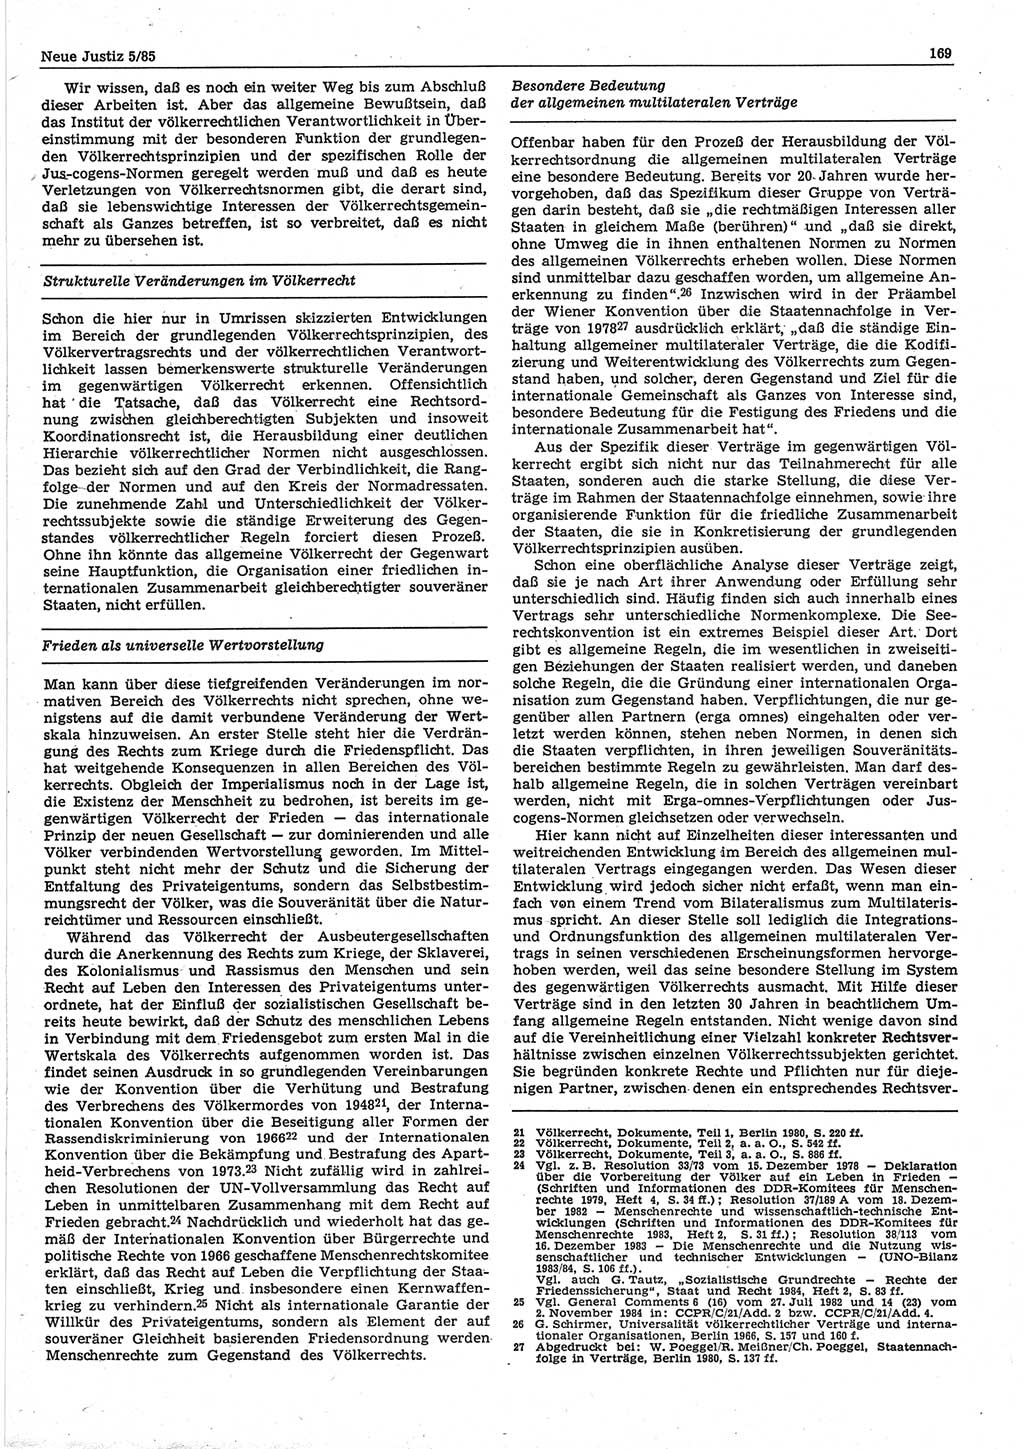 Neue Justiz (NJ), Zeitschrift für sozialistisches Recht und Gesetzlichkeit [Deutsche Demokratische Republik (DDR)], 39. Jahrgang 1985, Seite 169 (NJ DDR 1985, S. 169)